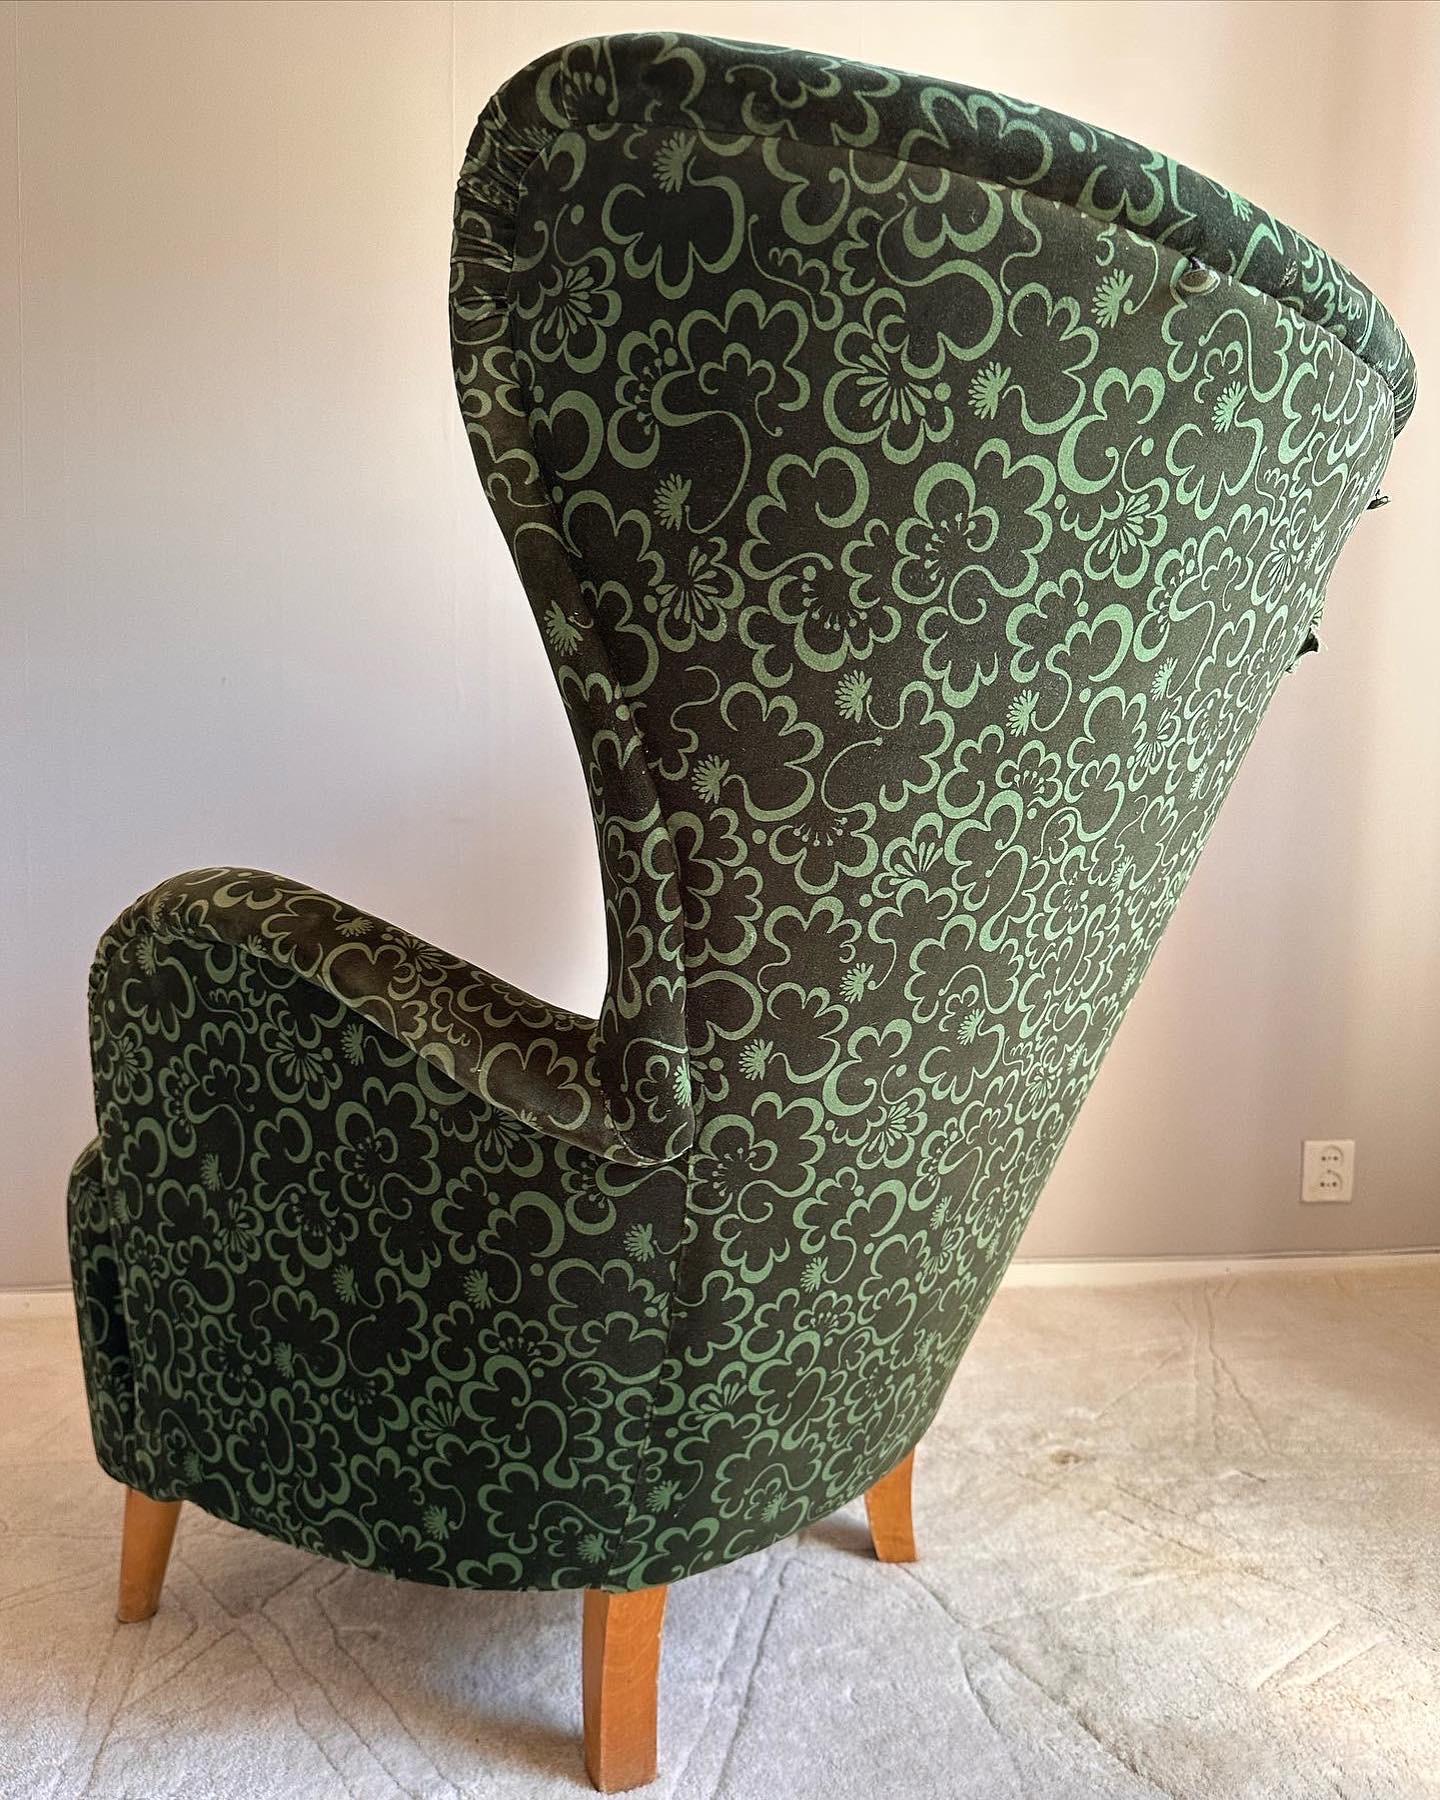 Cette rare chaise à dossier a été conçue par Otto Schulz pour Boet dans les années 1940. Le design organique et les courbes étonnantes créent une belle apparence.

Cette pièce sera emballée avec le plus grand soin afin que vous, en tant qu'acheteur,